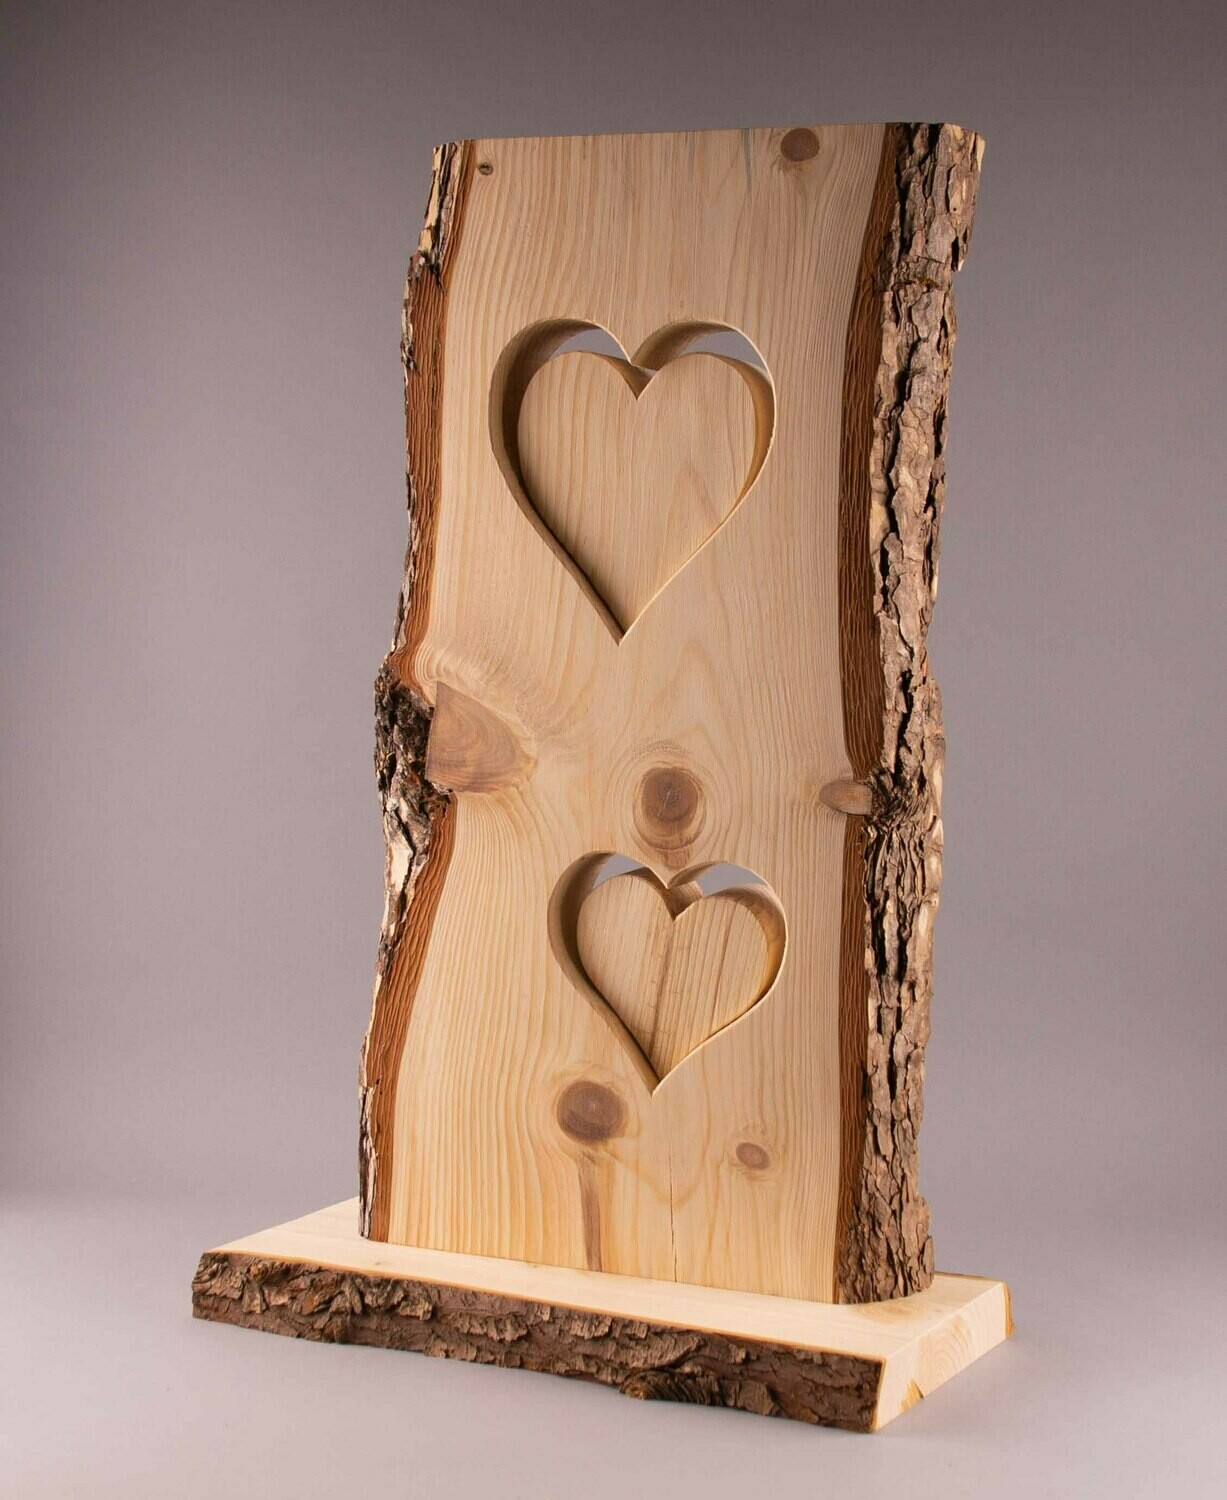 Lärchenholz-Stehle mit 2 Herzen